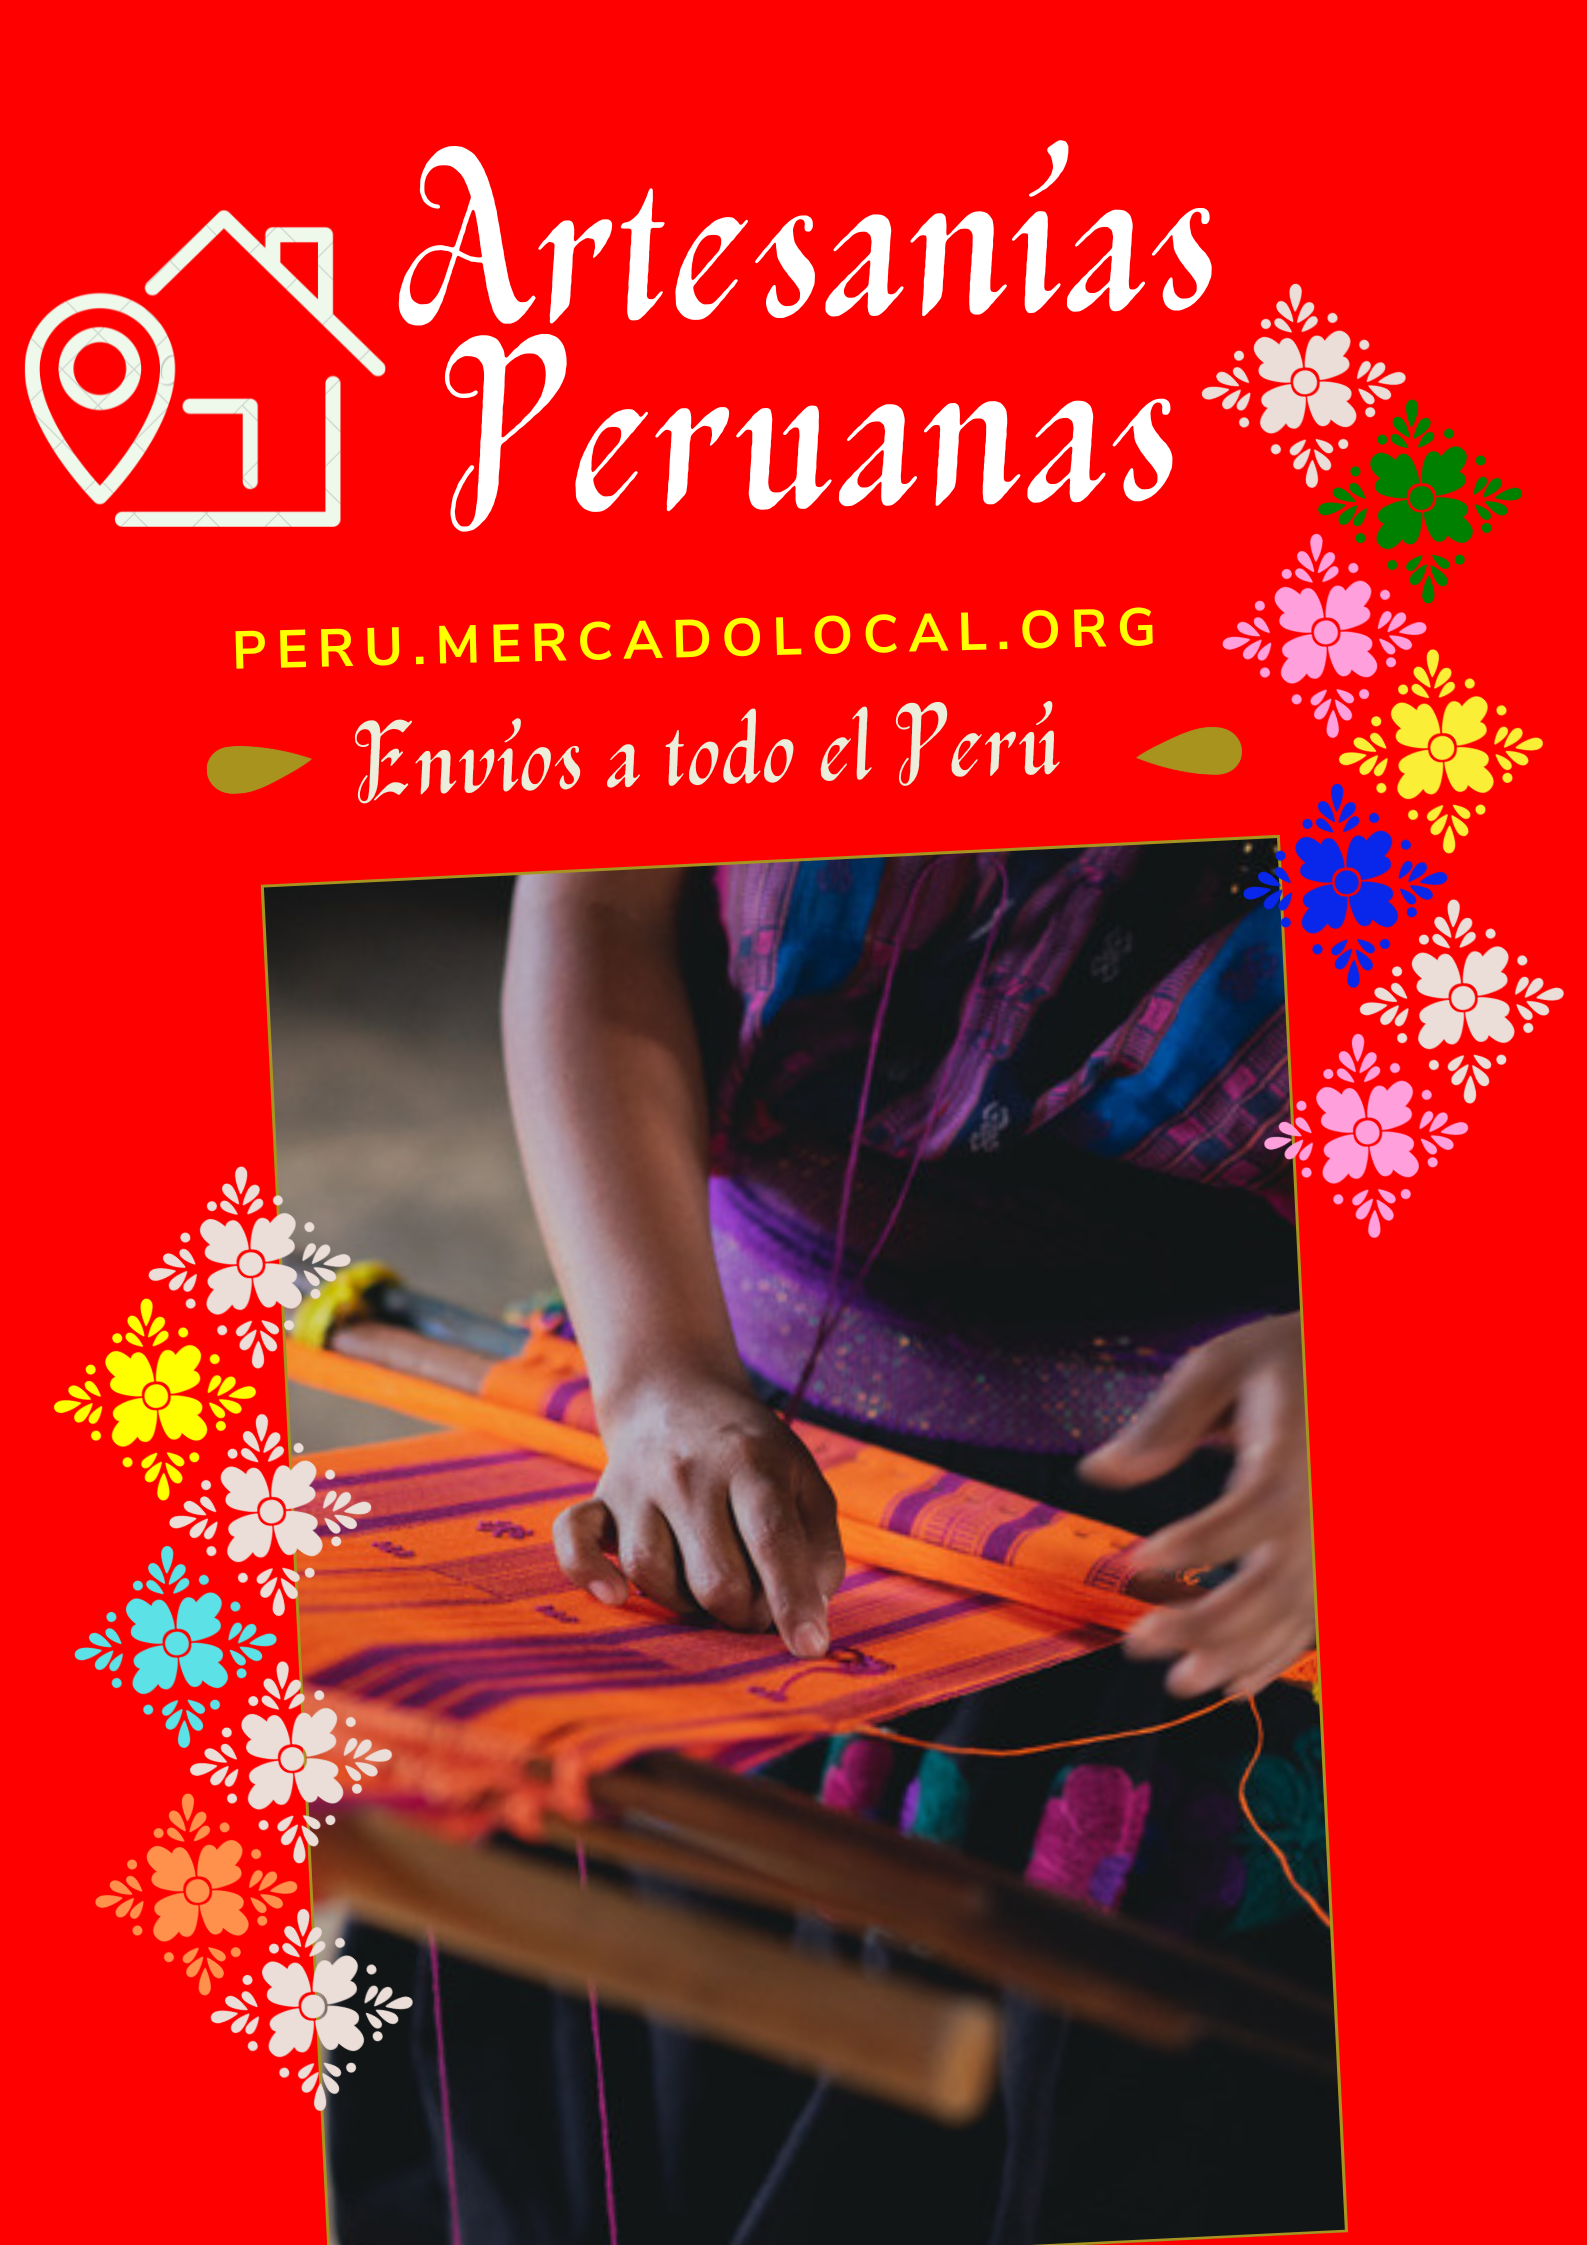 artesanias peruanas